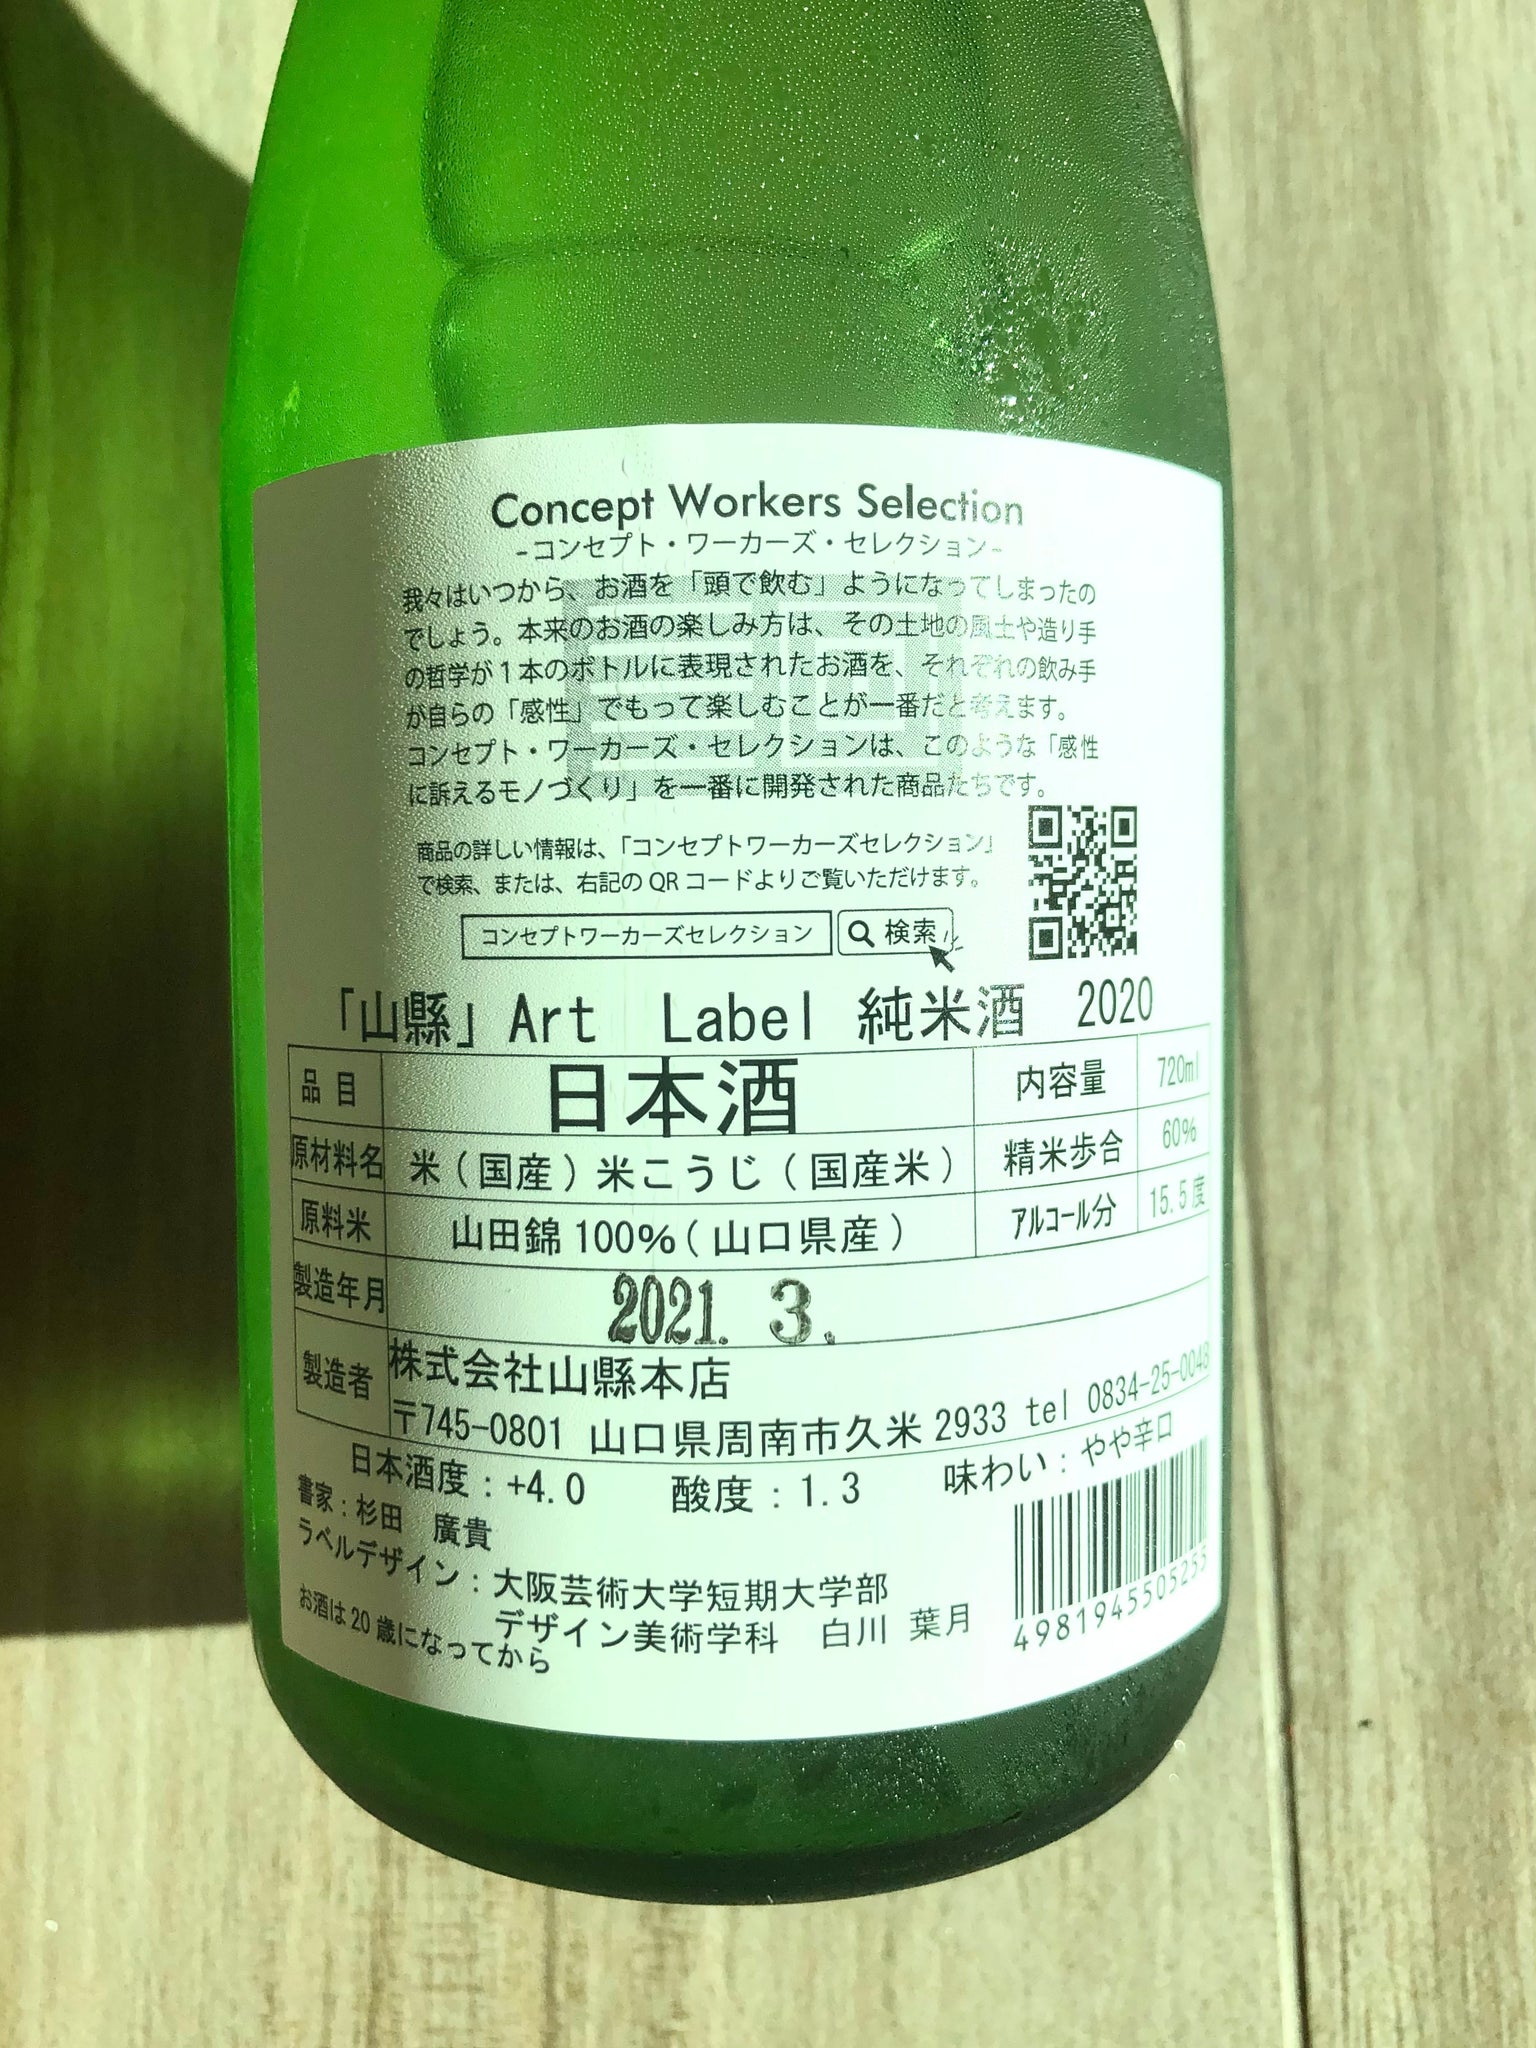 【山縣】ART LABEL 低溫熟成 純米酒 2020 日本清酒 720ml